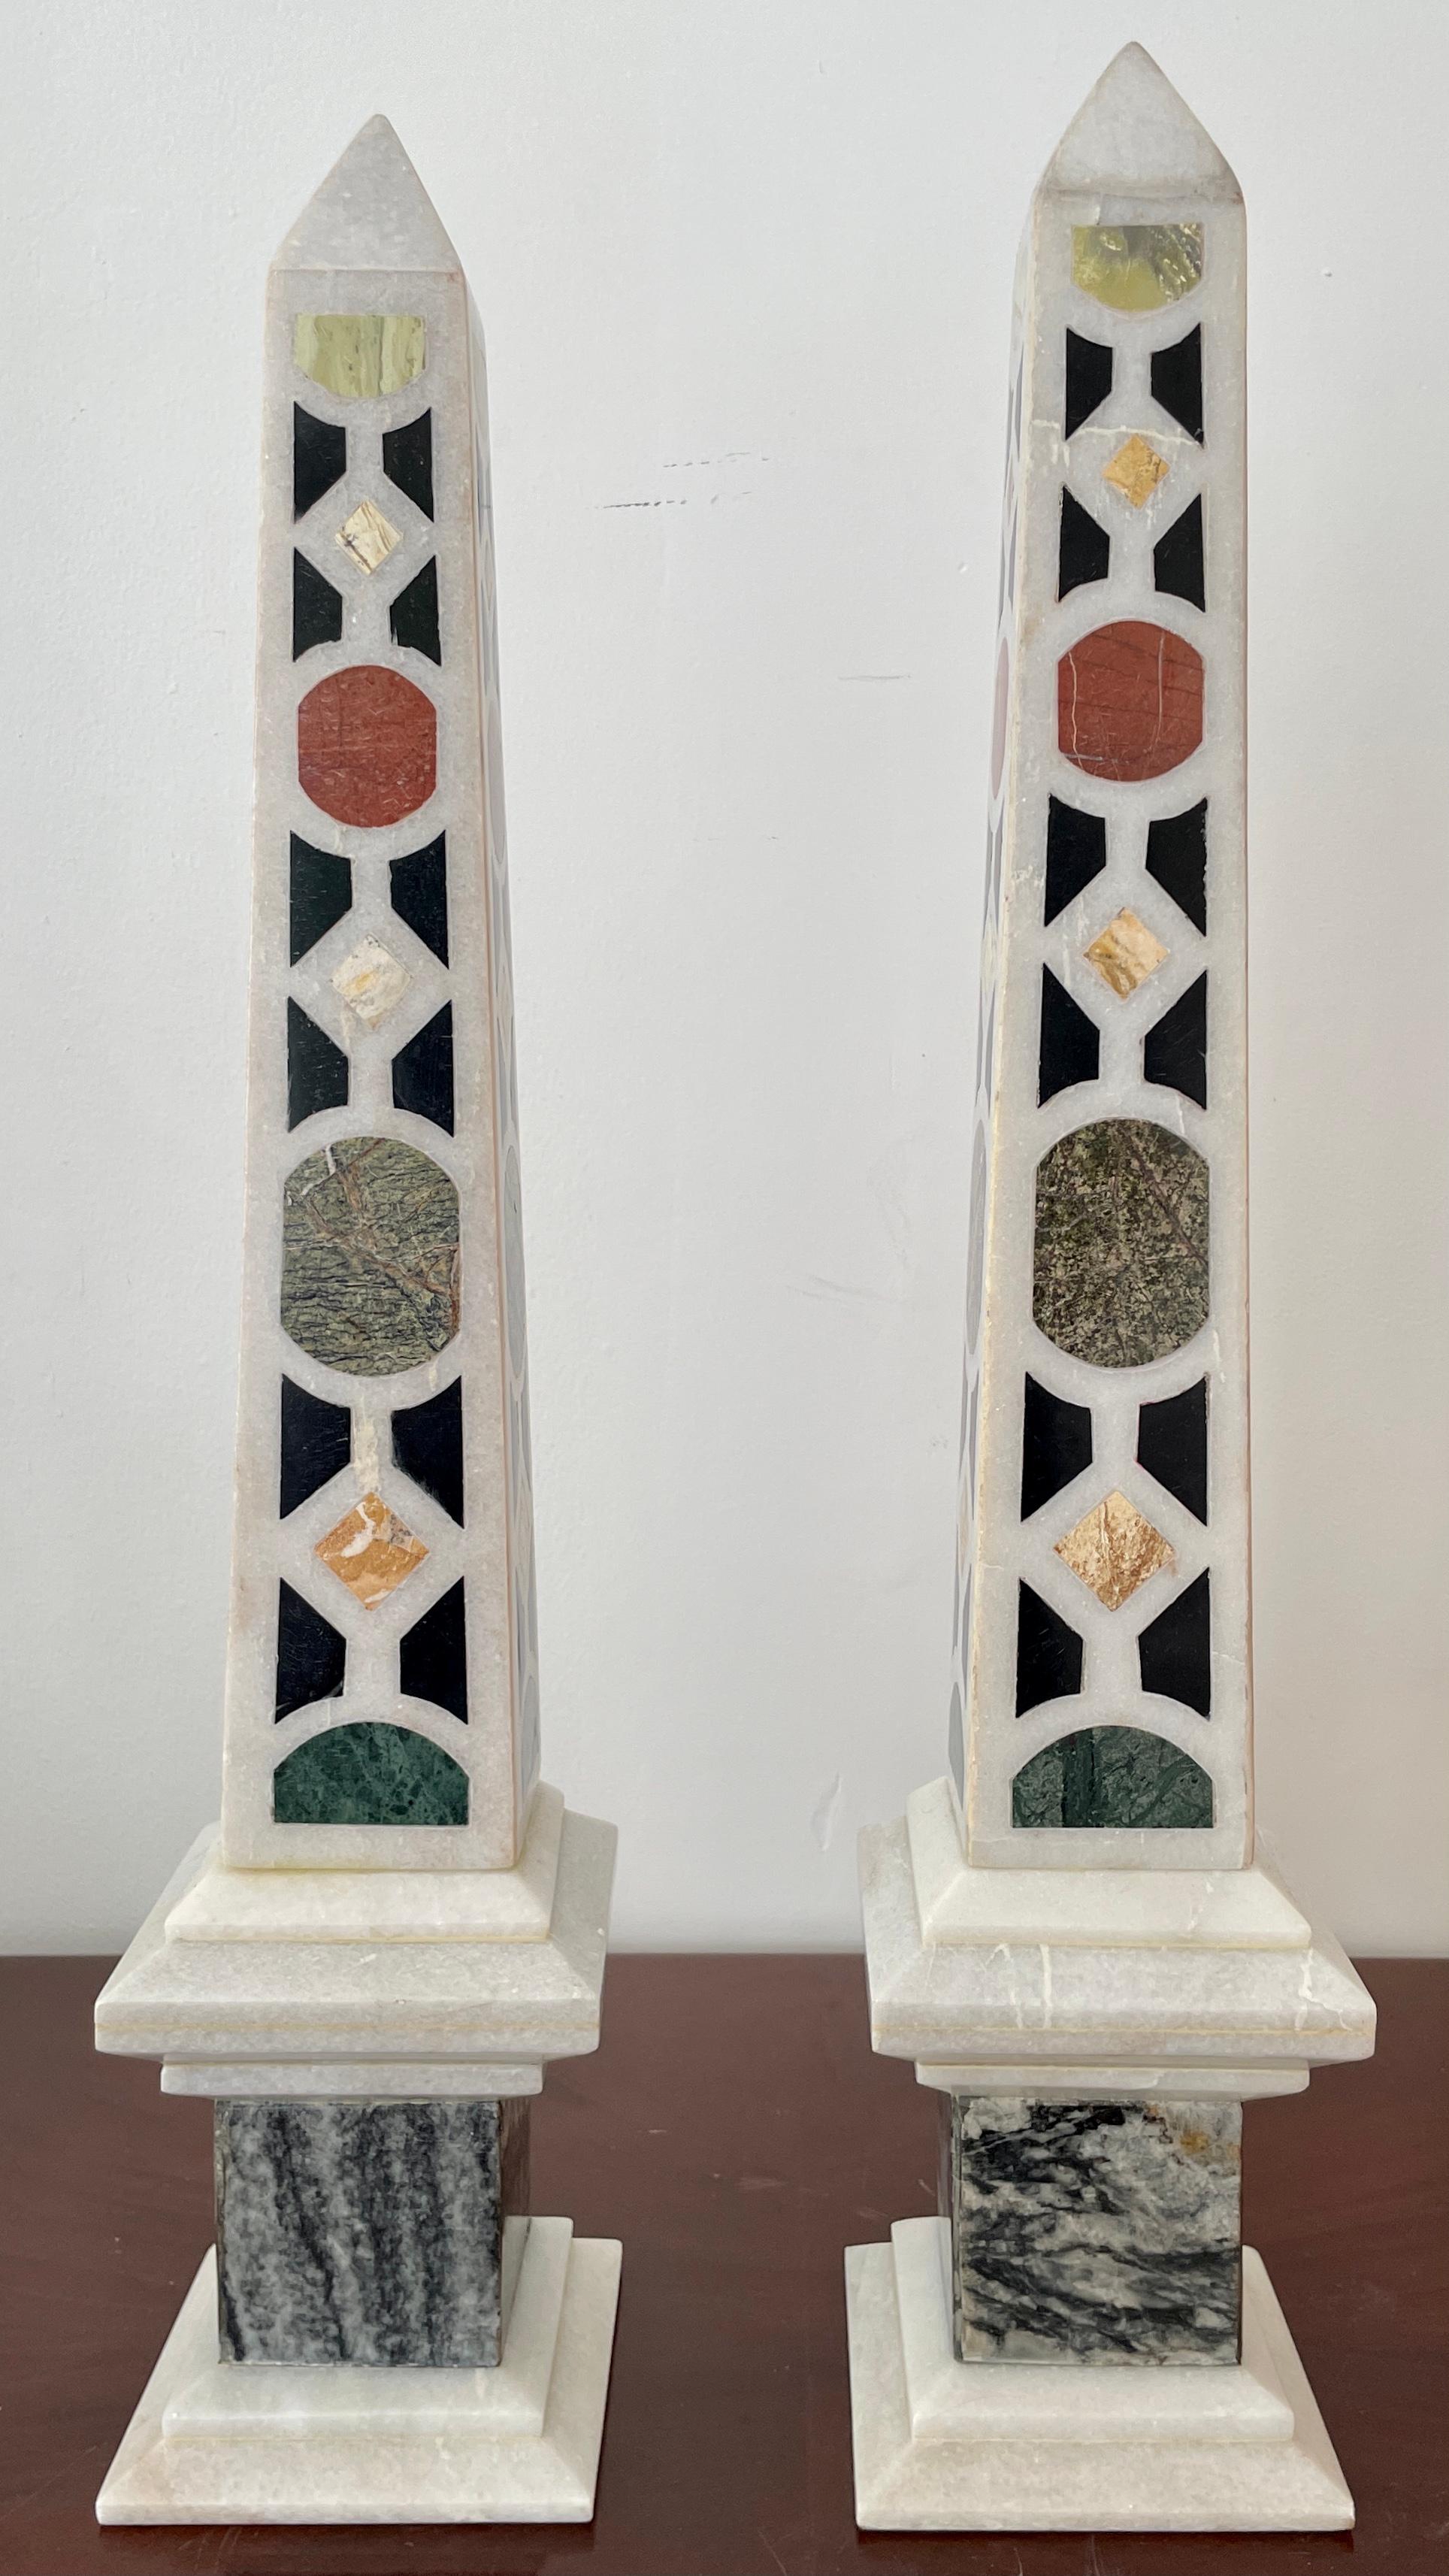 Magnifique paire d'obélisques italiens en marbre Pietra Dura du 19e siècle avec un motif de mosaïque sur une base. Un complément idéal pour les tables et les intérieurs classiques.